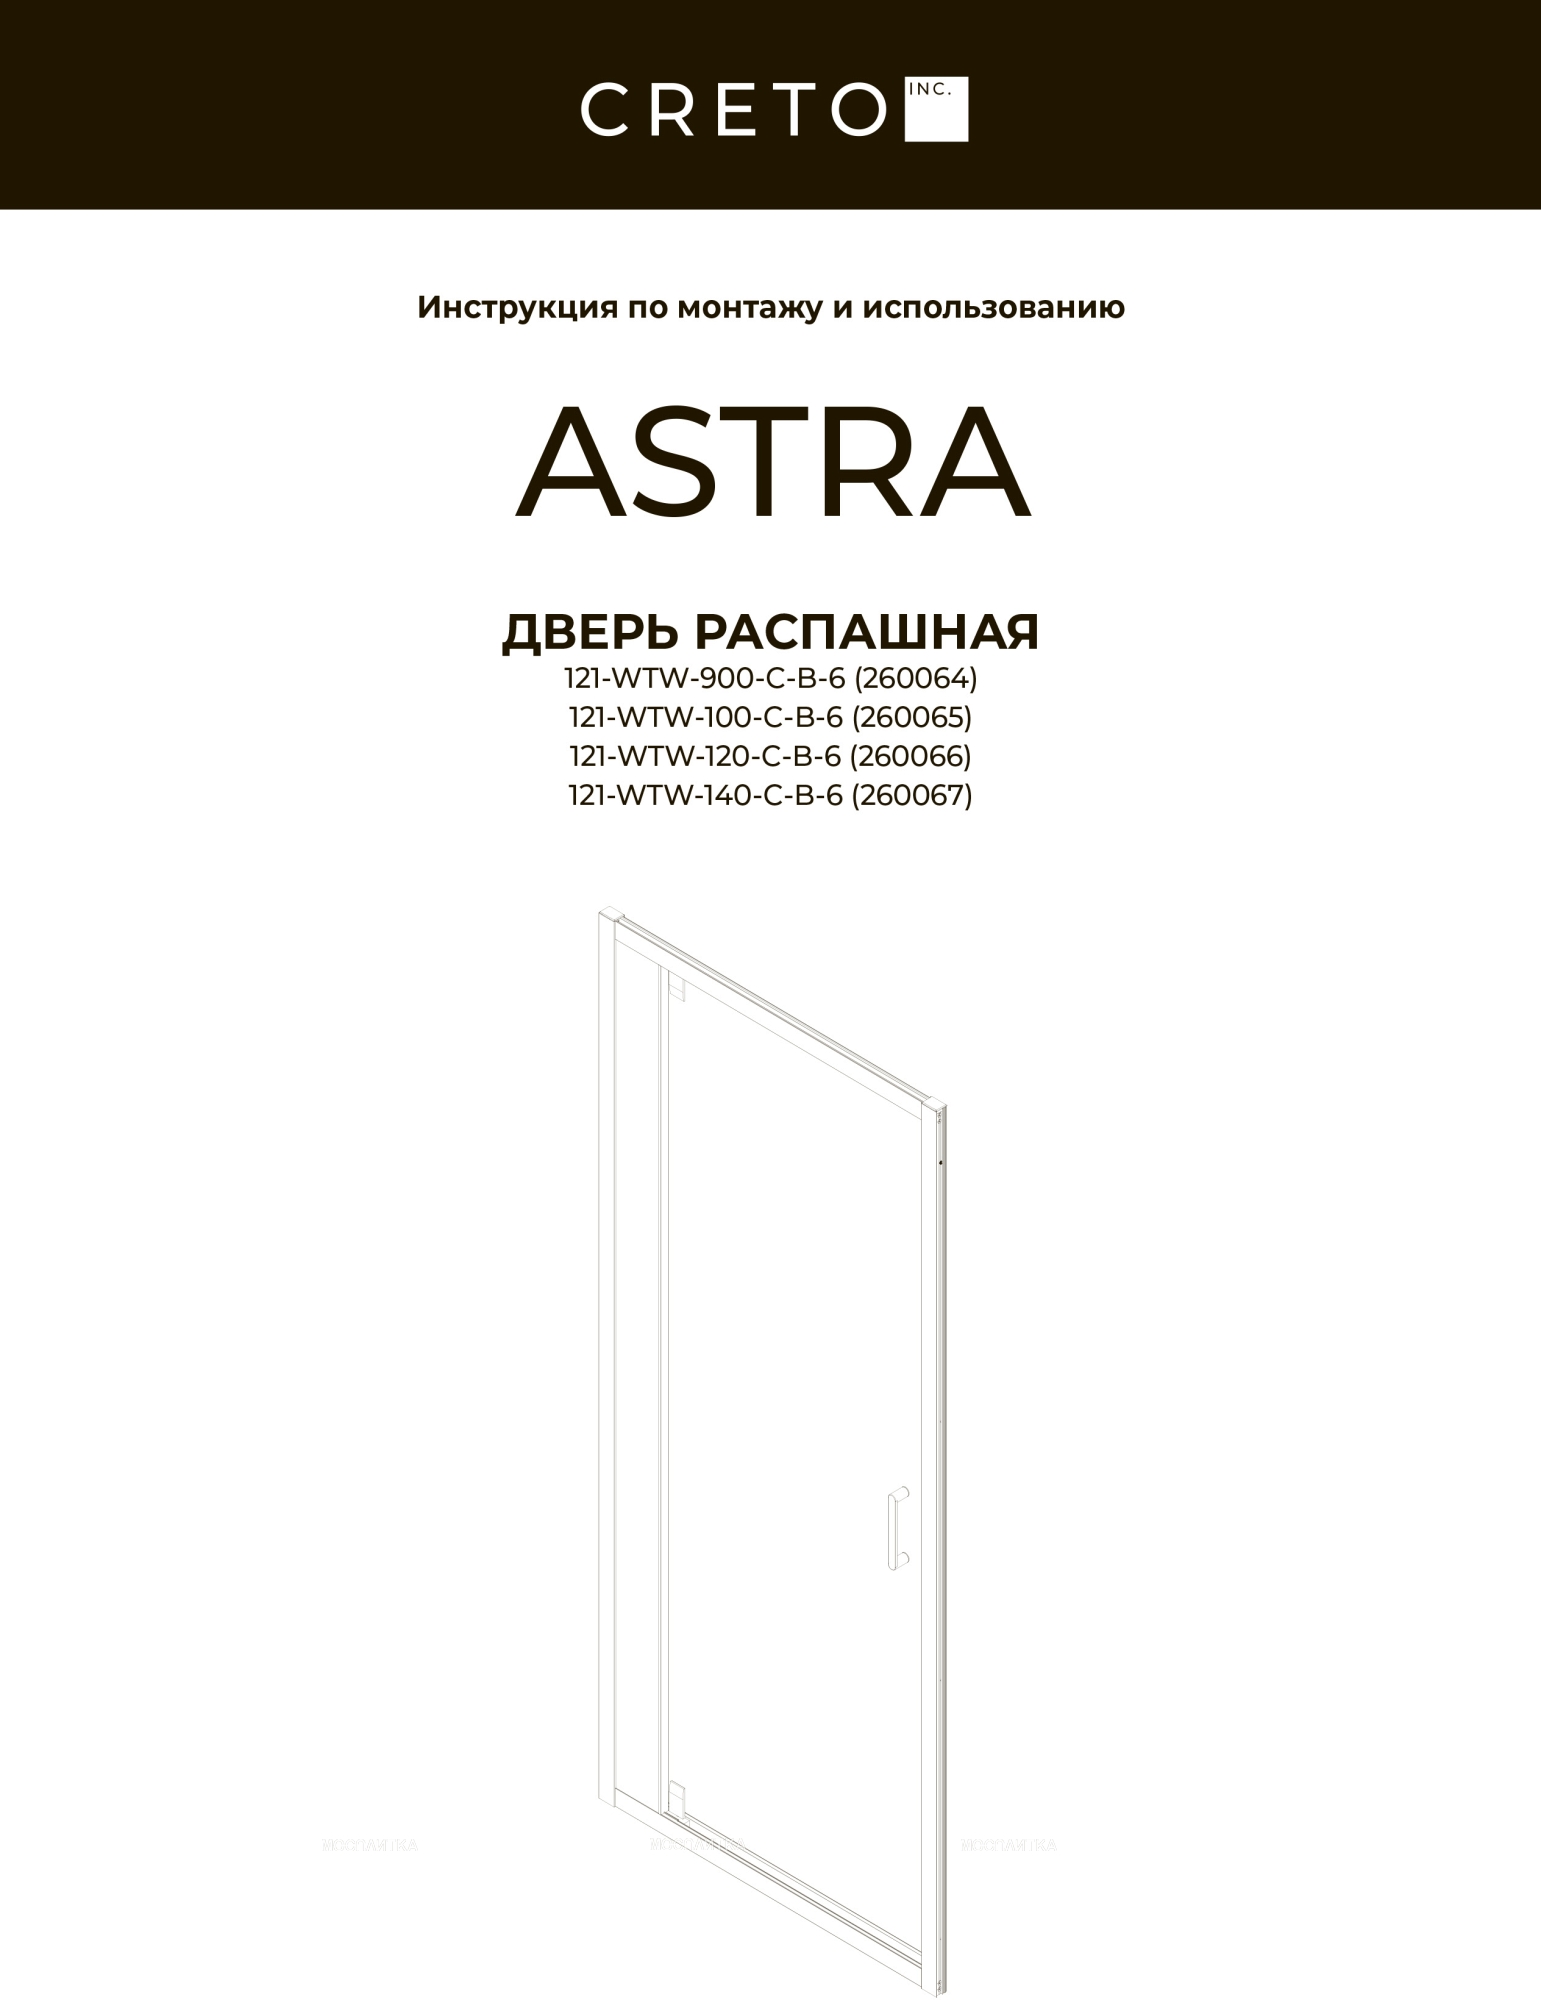 Душевой уголок Creto Astra стекло прозрачное профиль черный 140х80 см, 121-WTW-140-C-B-6 + 121-SP-800-C-B-6 - изображение 3